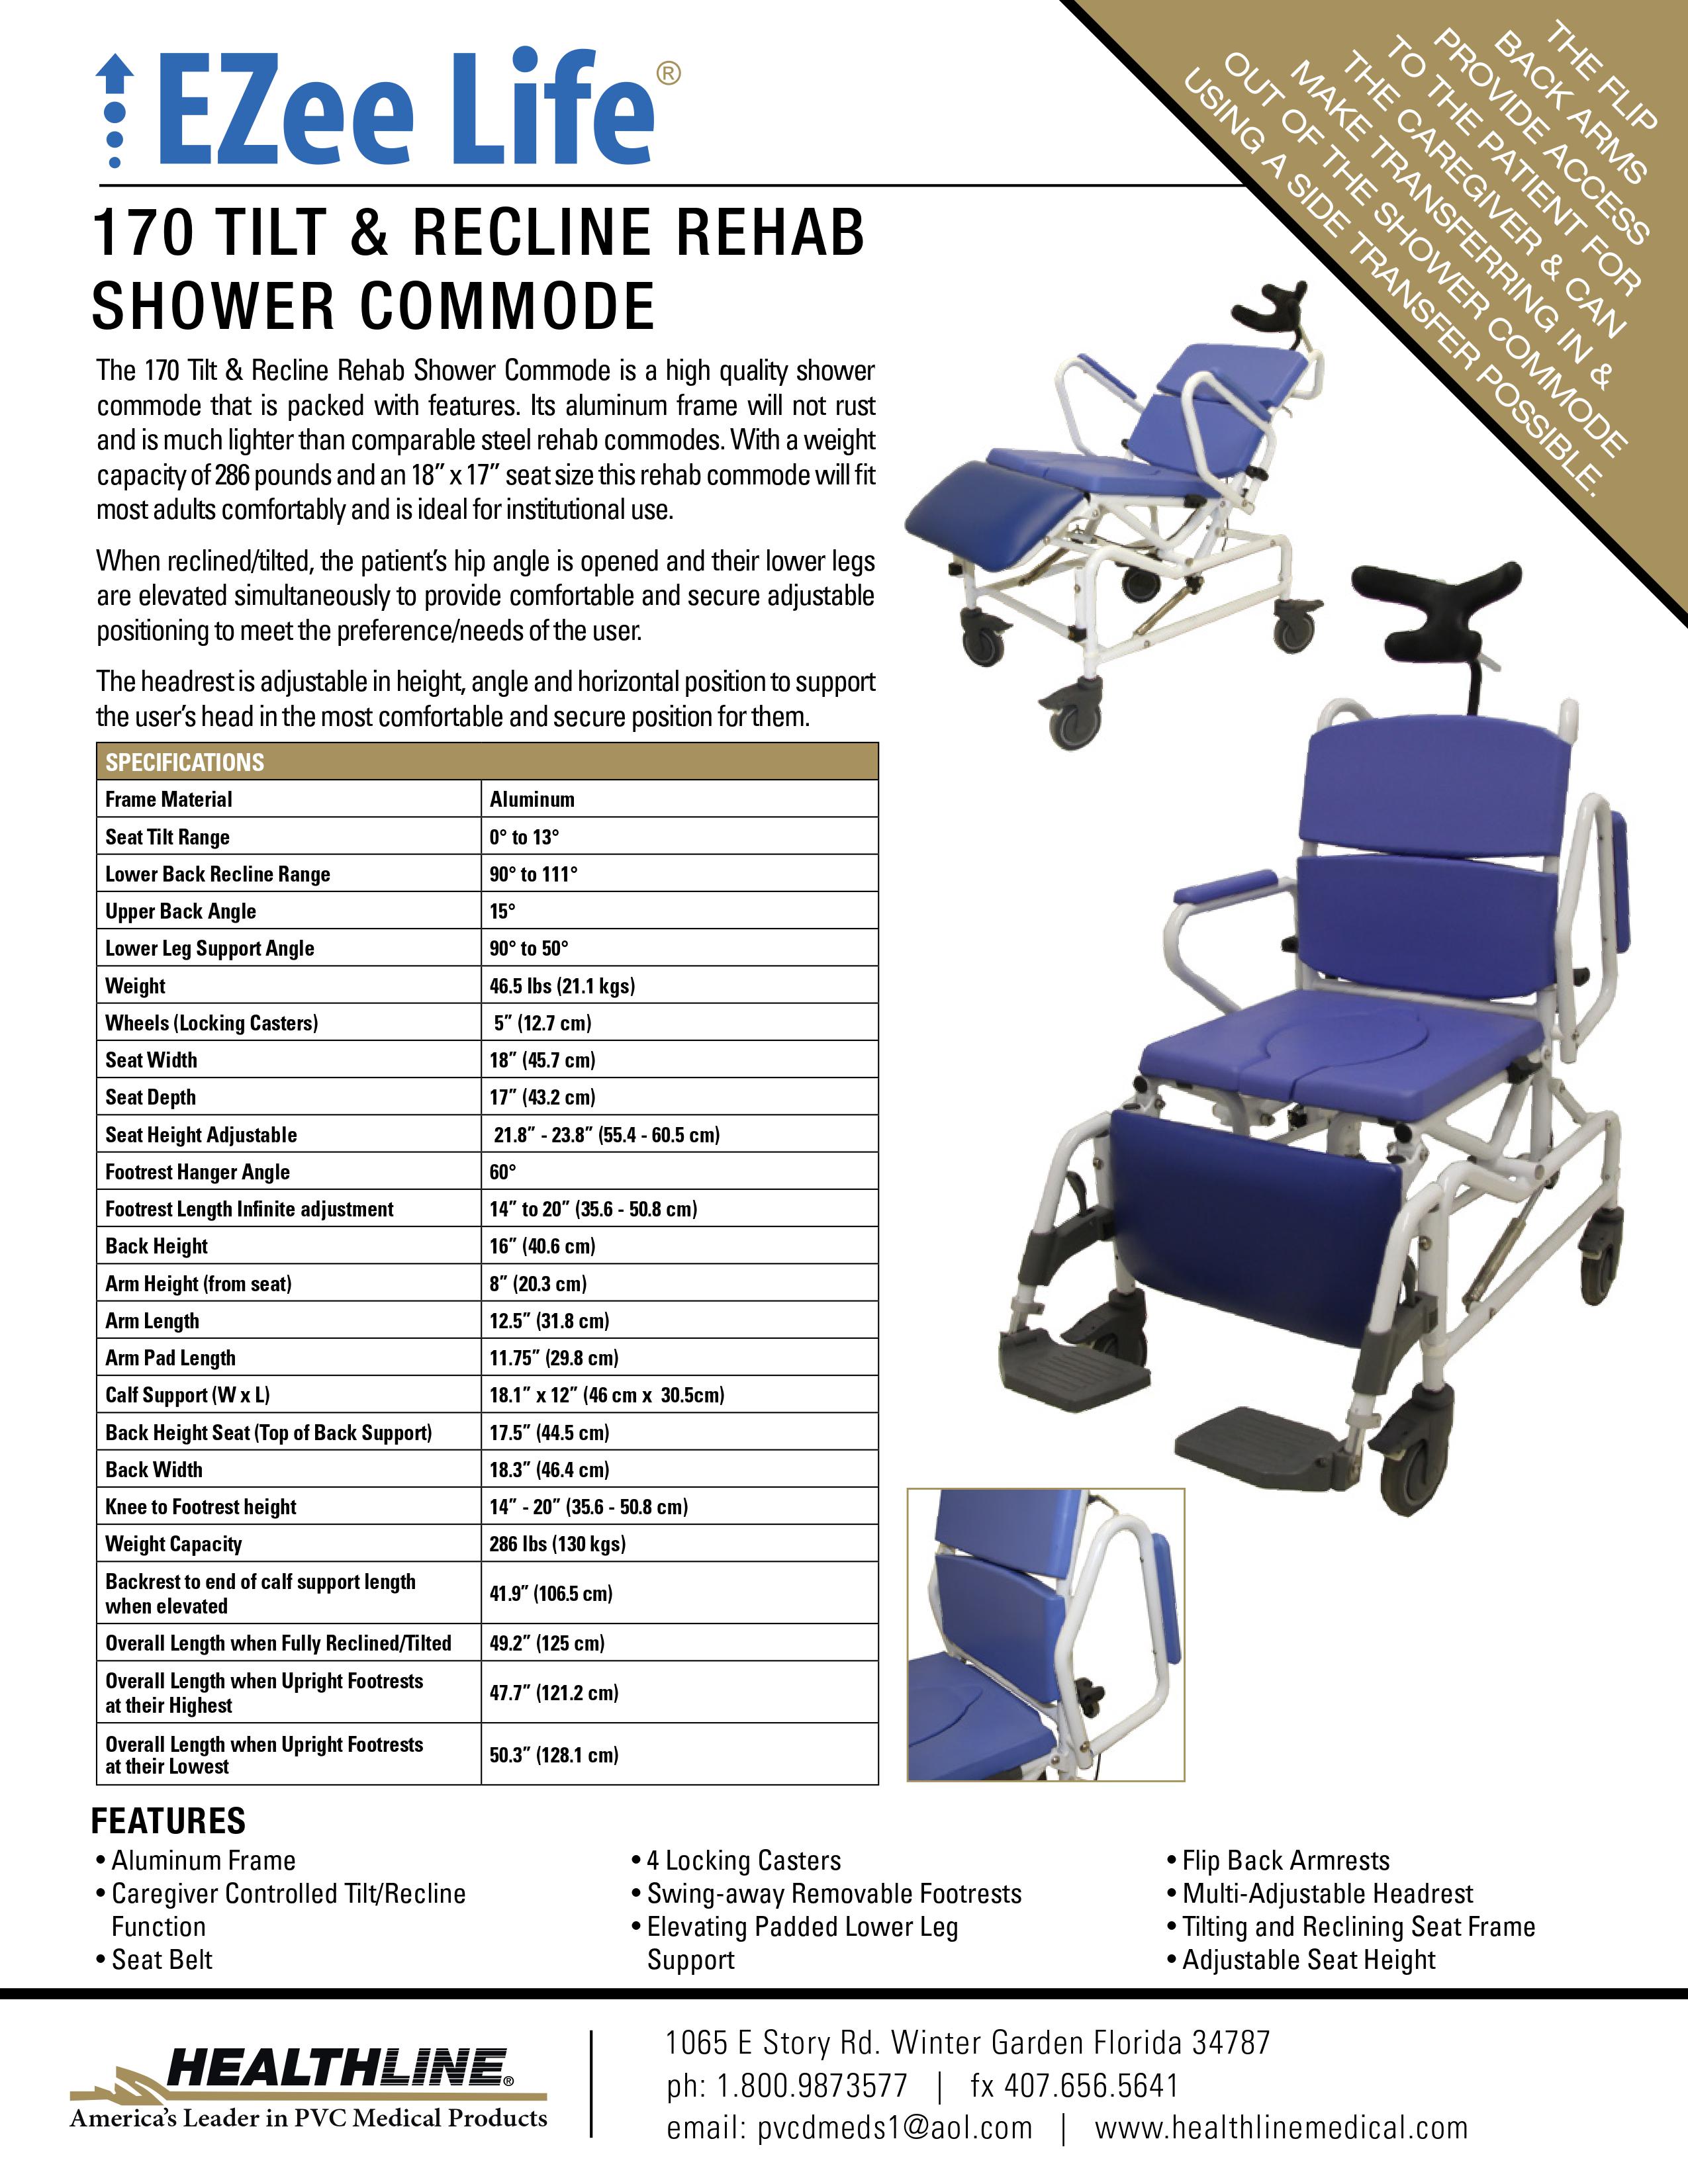 Shower commode Model 170